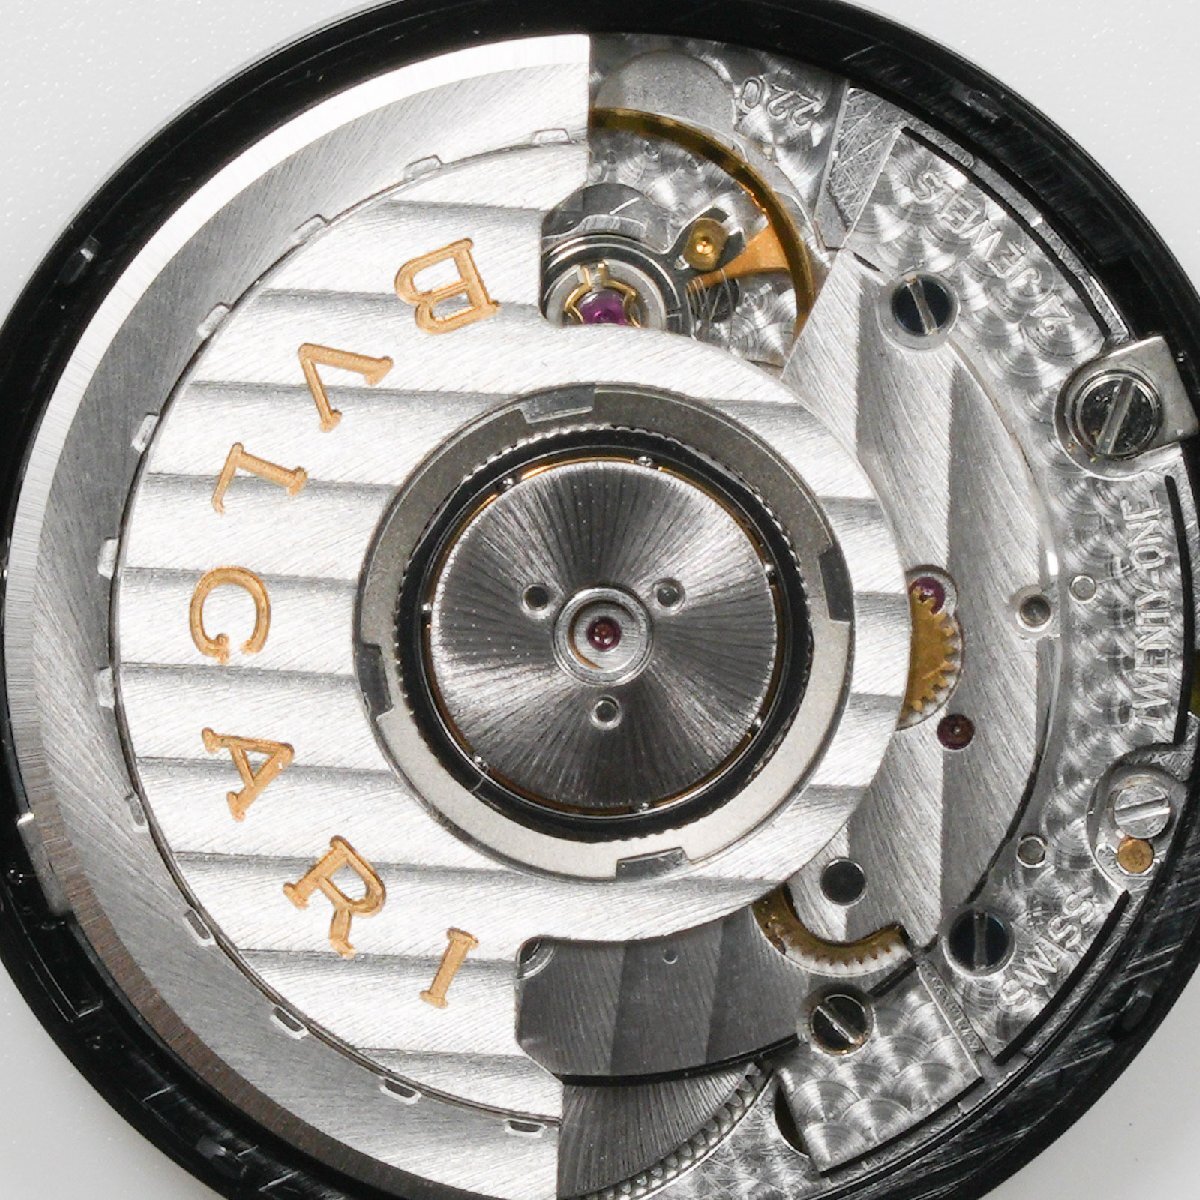 ブルガリ BVLGARI 腕時計 ムーブメント Cal. 220 ディアゴノ外し 自動巻 中古 動作品 [質イコー]の画像4